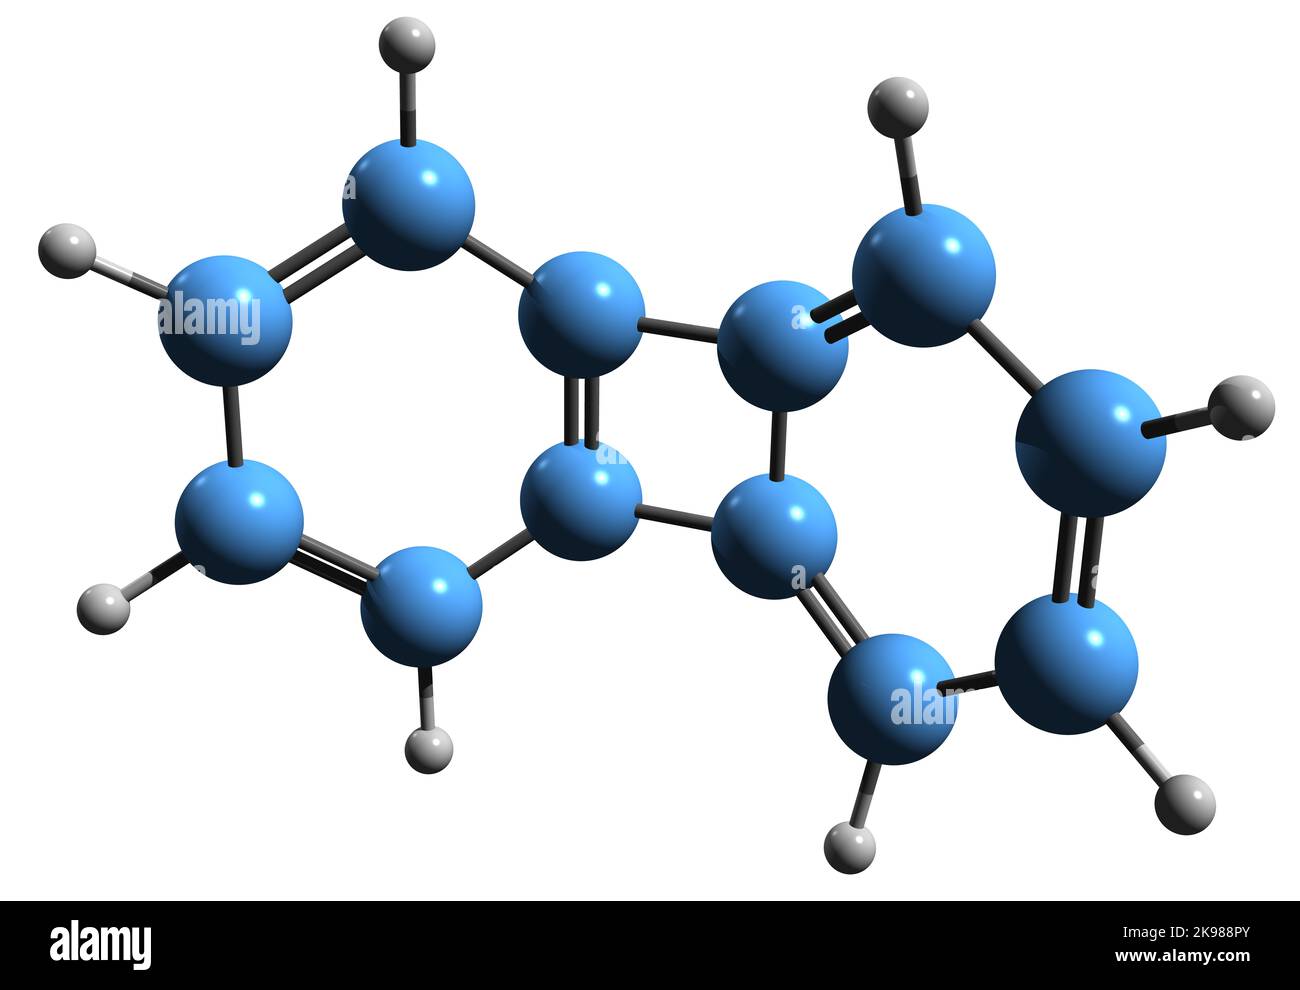 3D Bild der Skelettformel von Biphenylen - molekularchemische Struktur von polyzyklischem aromatischem Kohlenwasserstoff auf weißem Hintergrund isoliert Stockfoto